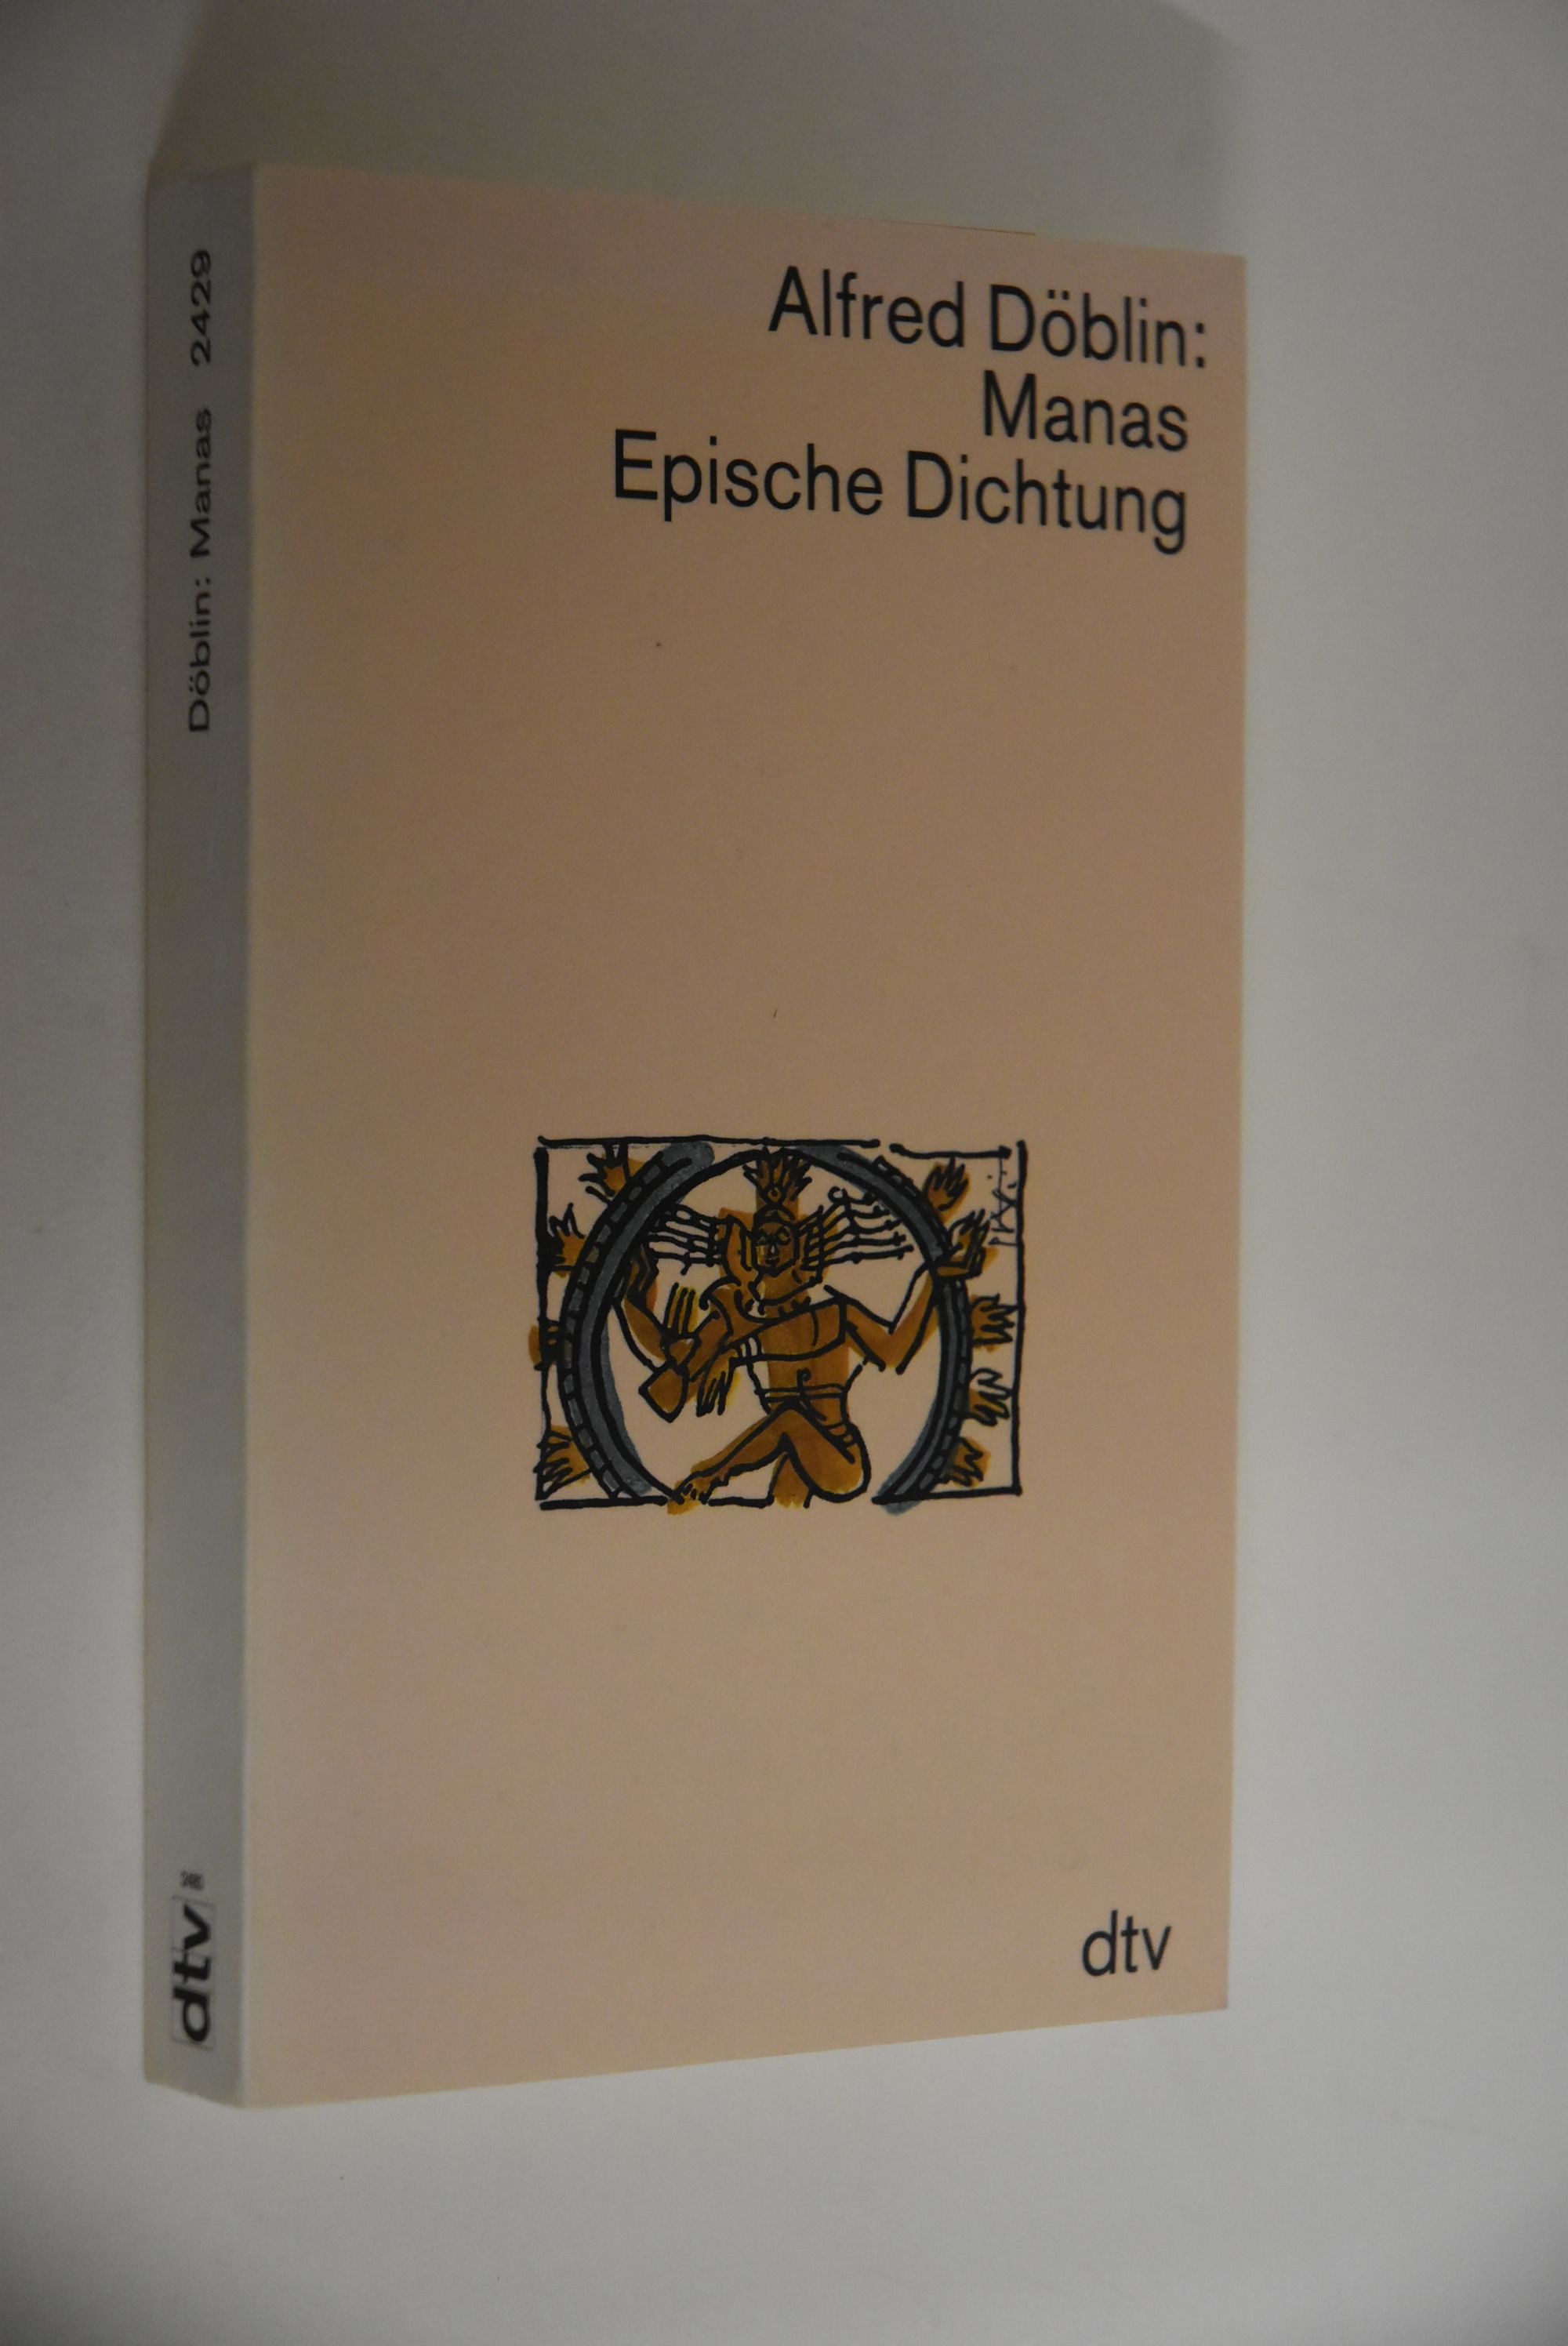 Döblin, Alfred: Werkausgabe in Einzelbänden; Teil: Manas: epische Dichtung. mit e. Nachw. von Walter Muschg / dtv; 2429 - Döblin, Alfred